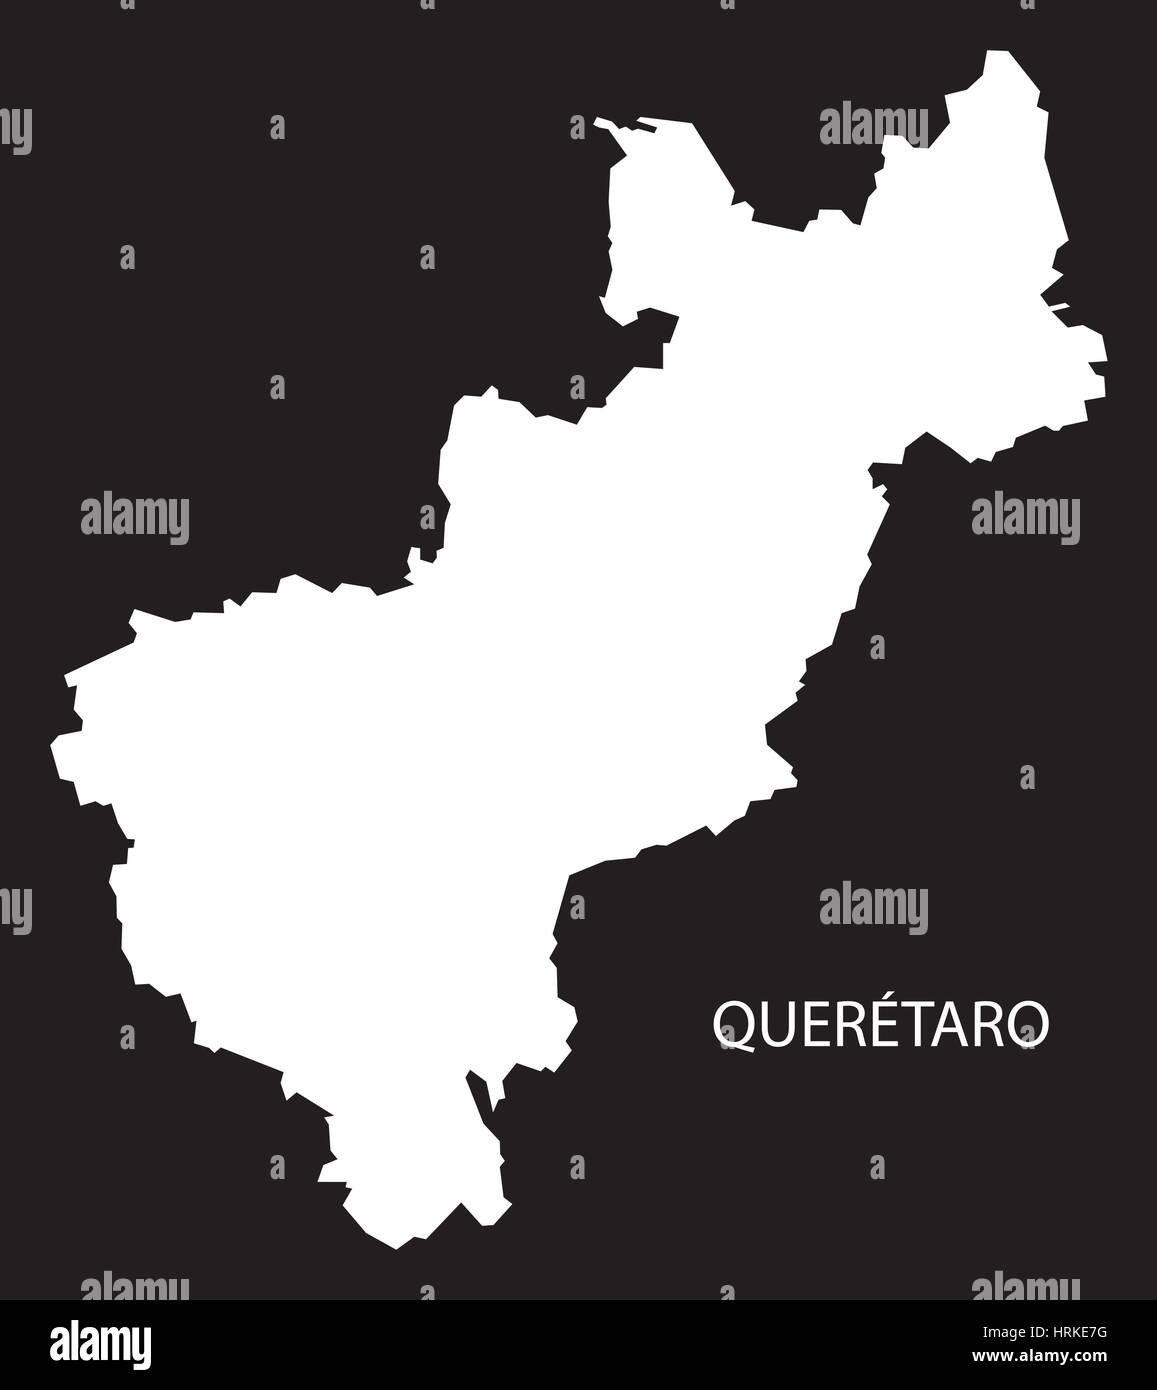 Queretaro Mexique Site silhouette inversé noir Illustration de Vecteur